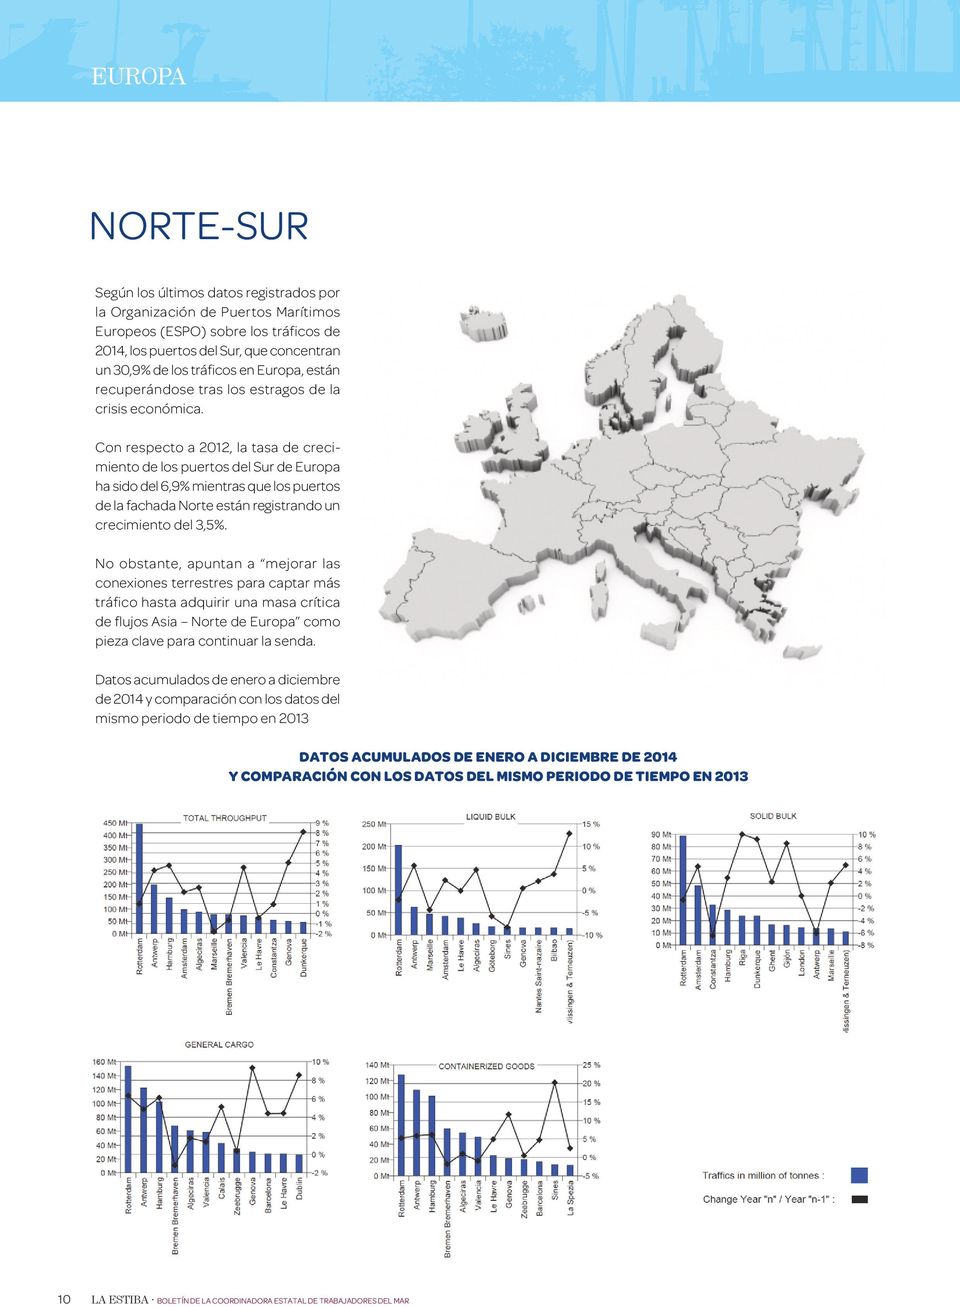 Con respecto a 2012, la tasa de crecimiento de los puertos del Sur de Europa ha sido del 6,9% mientras que los puertos de la fachada Norte están registrando un crecimiento del 3,5%.